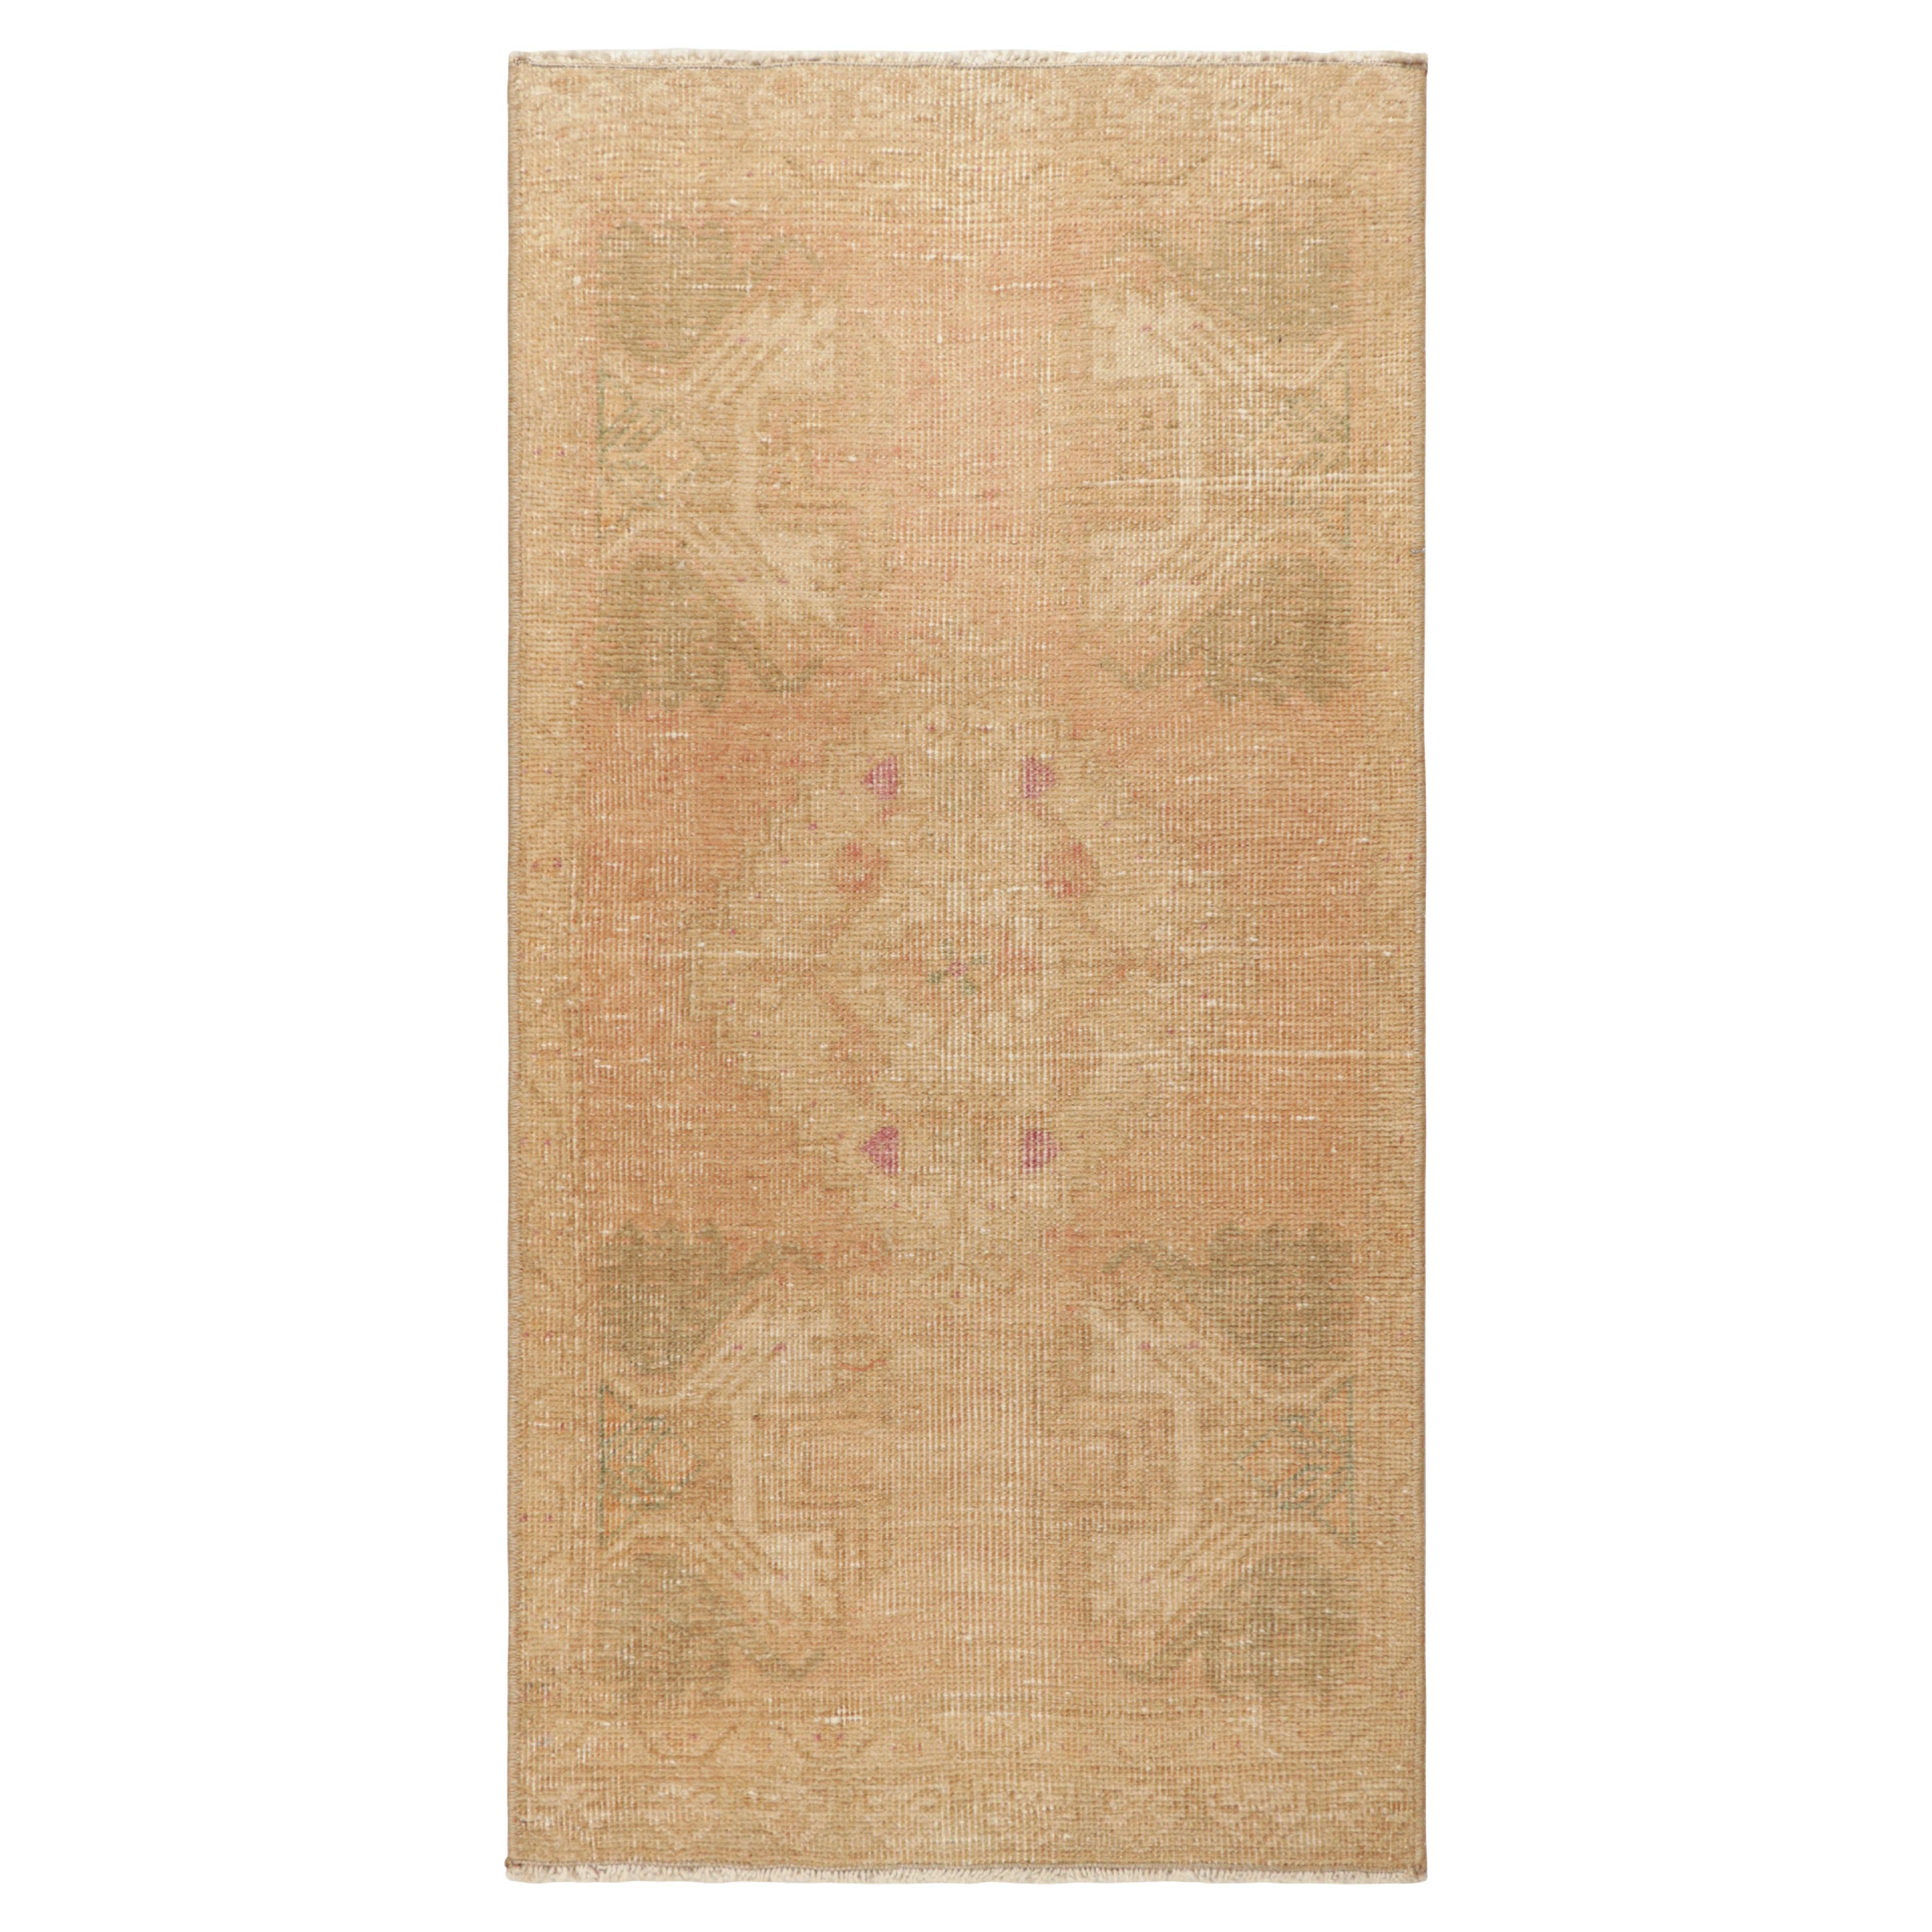 Vintage Oushak Teppich in Brown-Beige, mit geometrischen Mustern, von Rug & Kilim